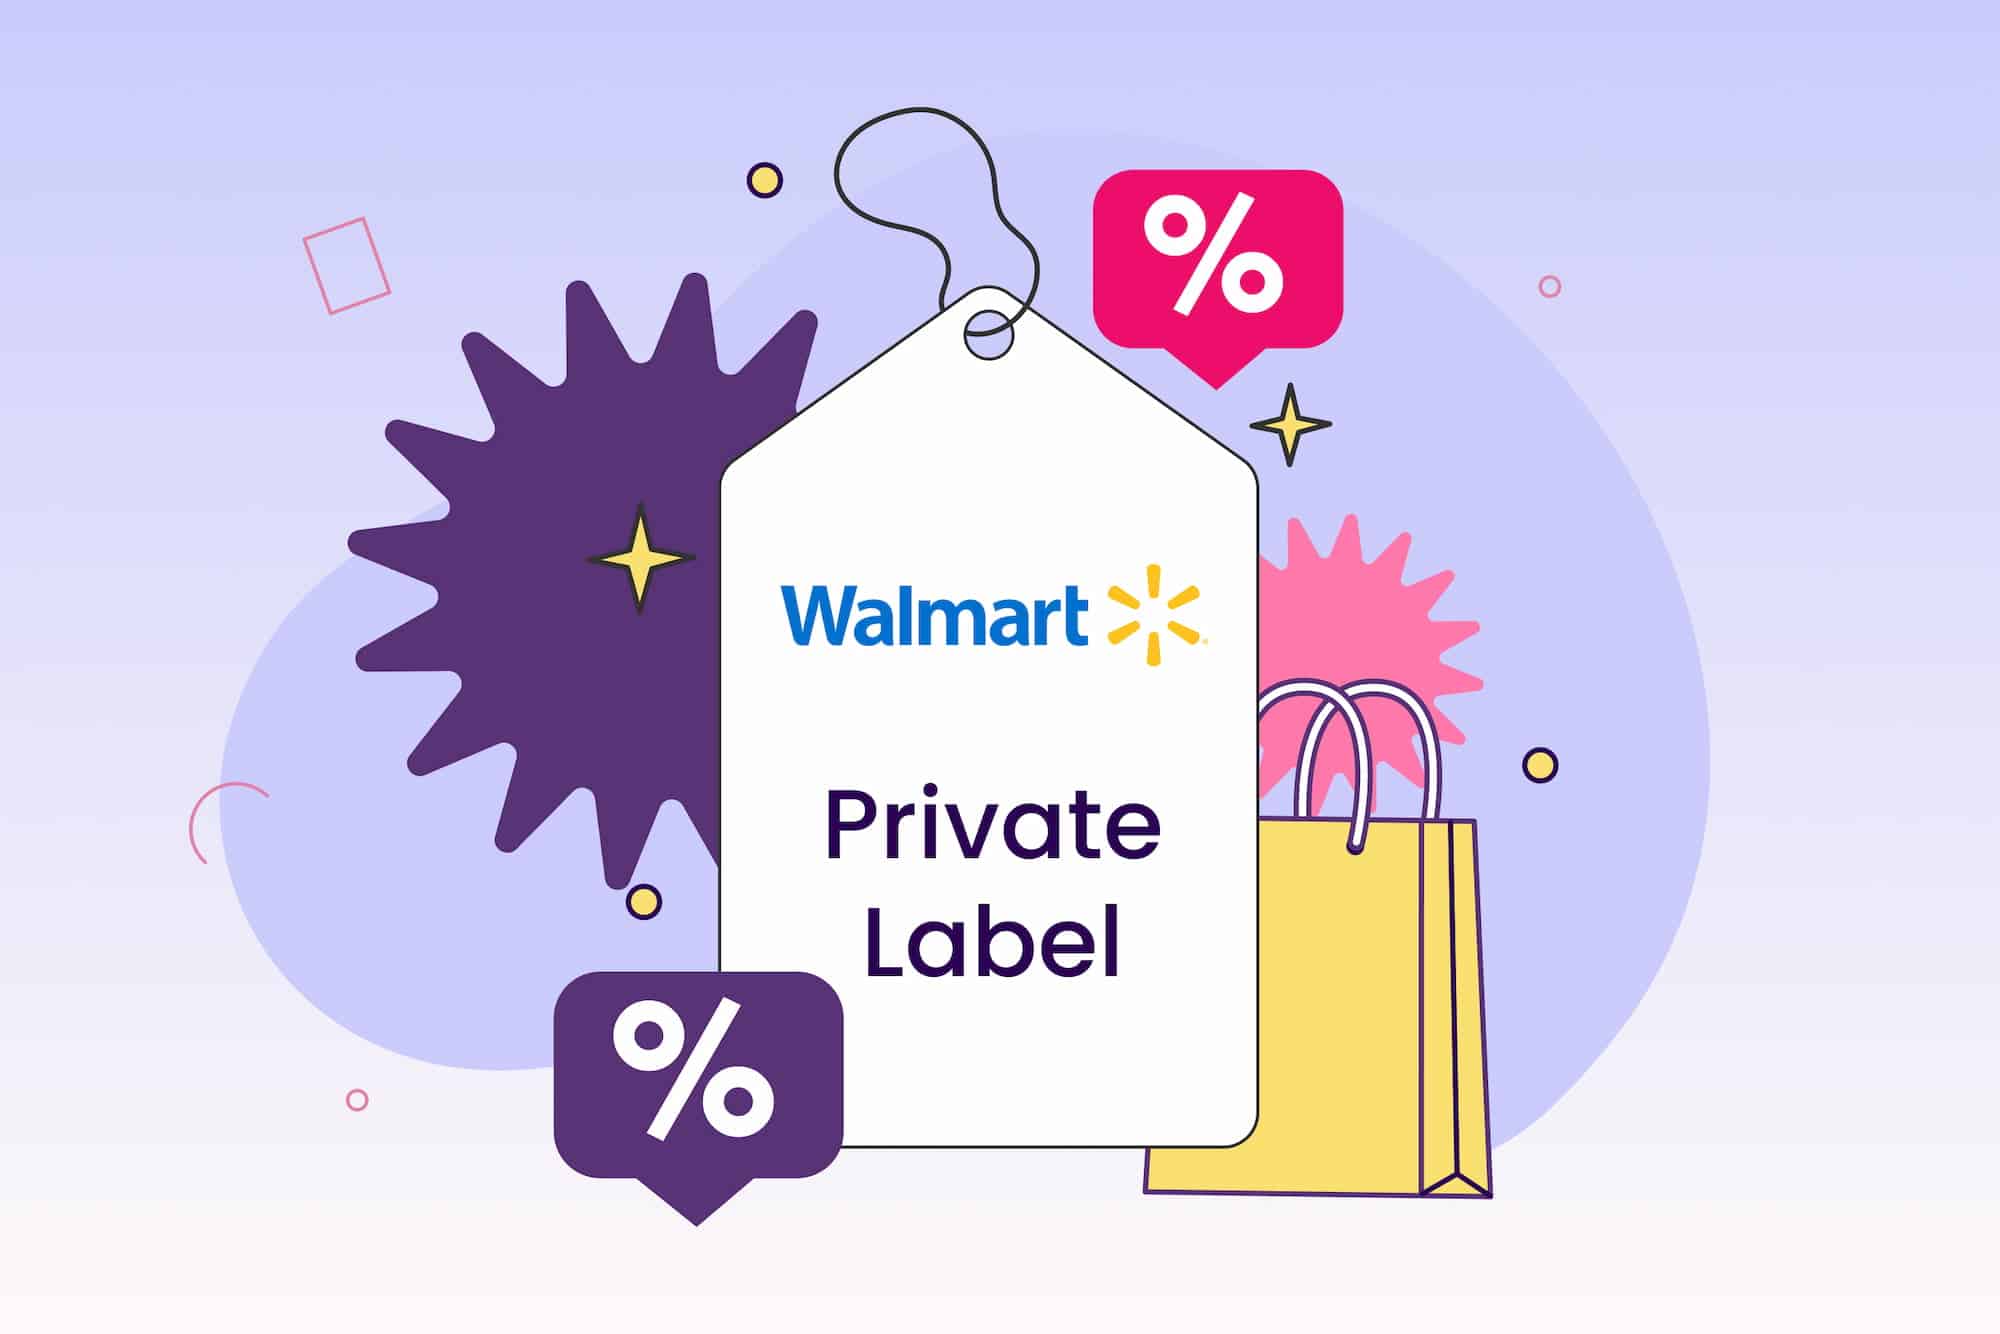 Walmart Private Label